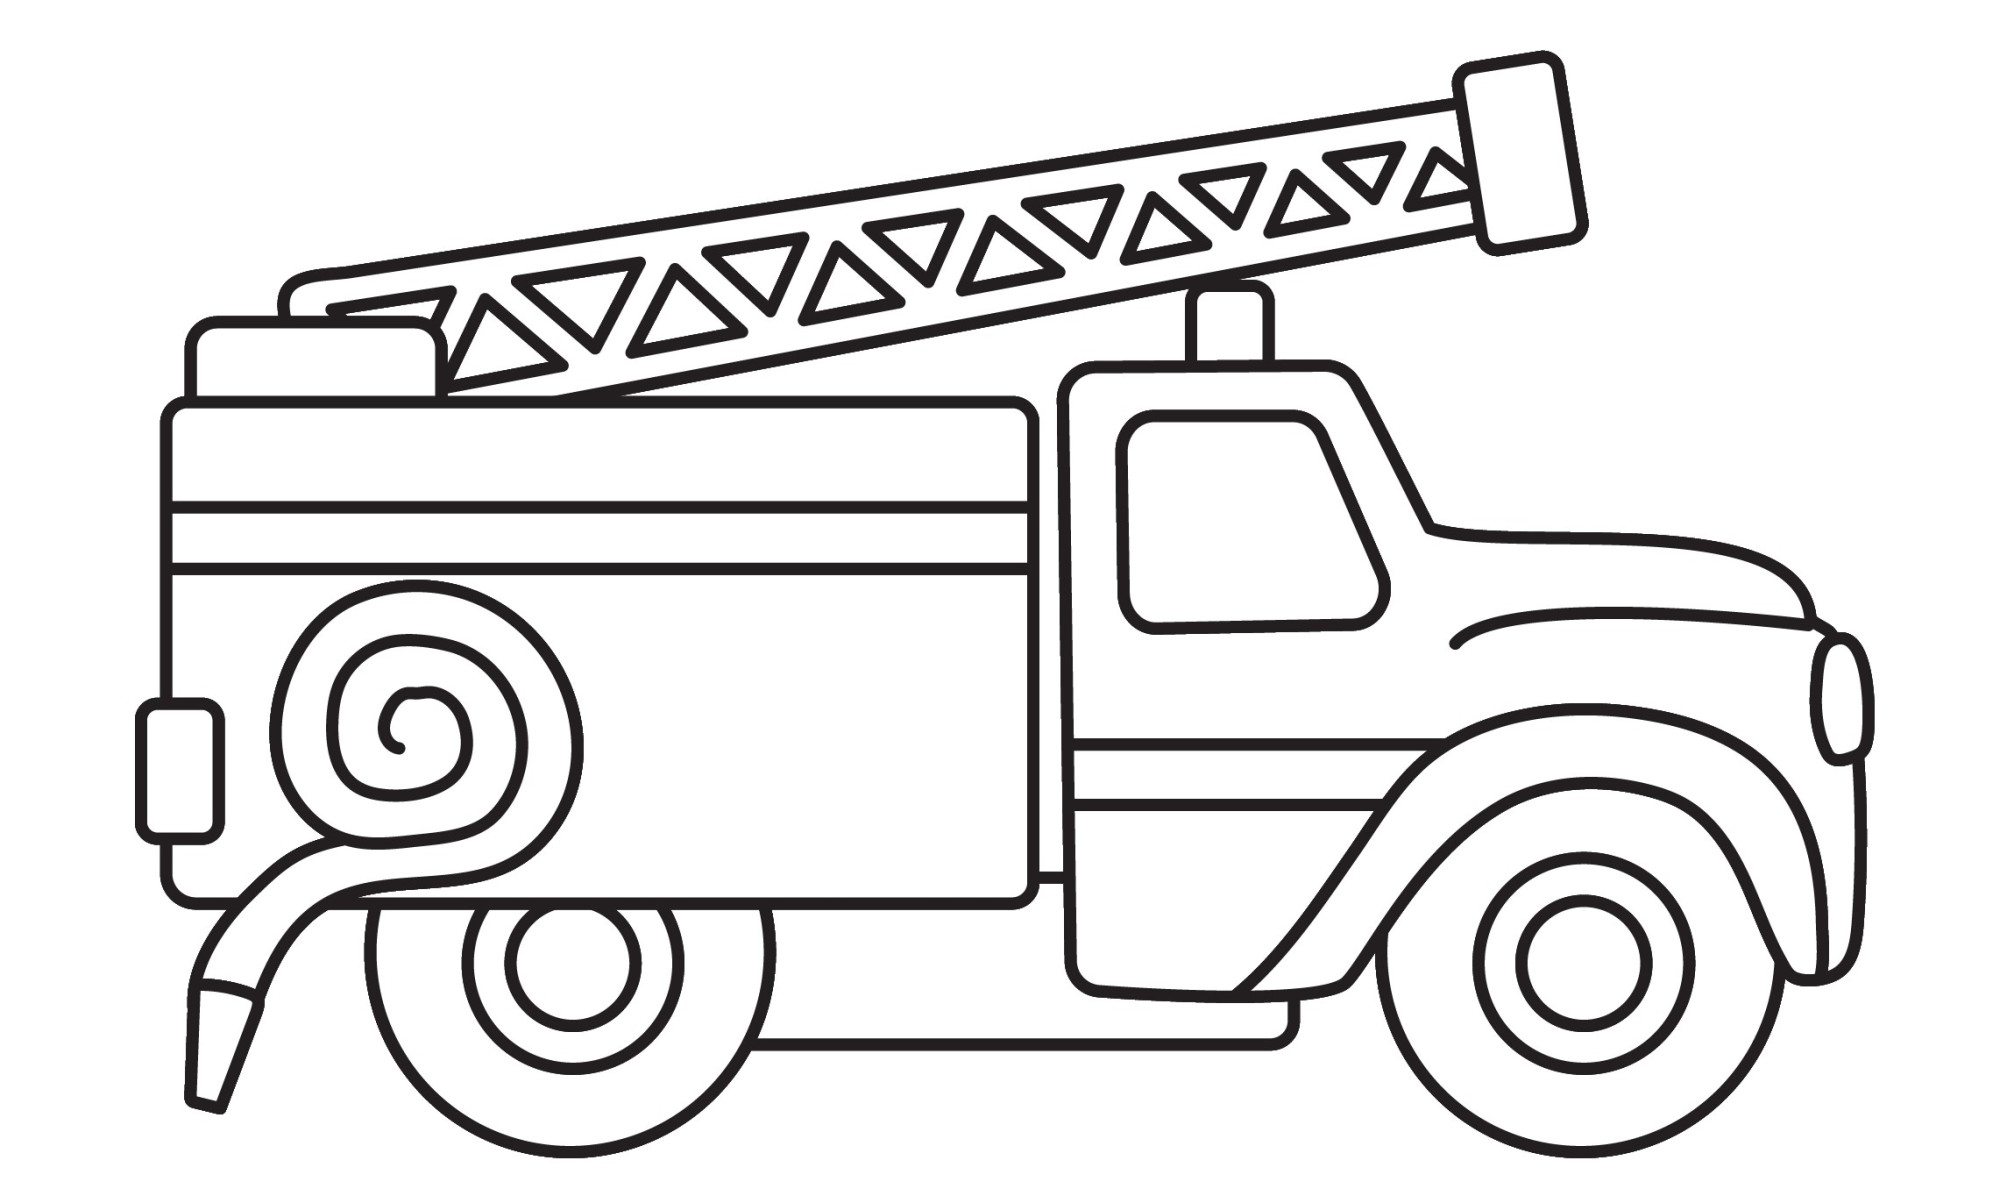 Раскраска для детей: пожарная машина «Пожарный ураган»